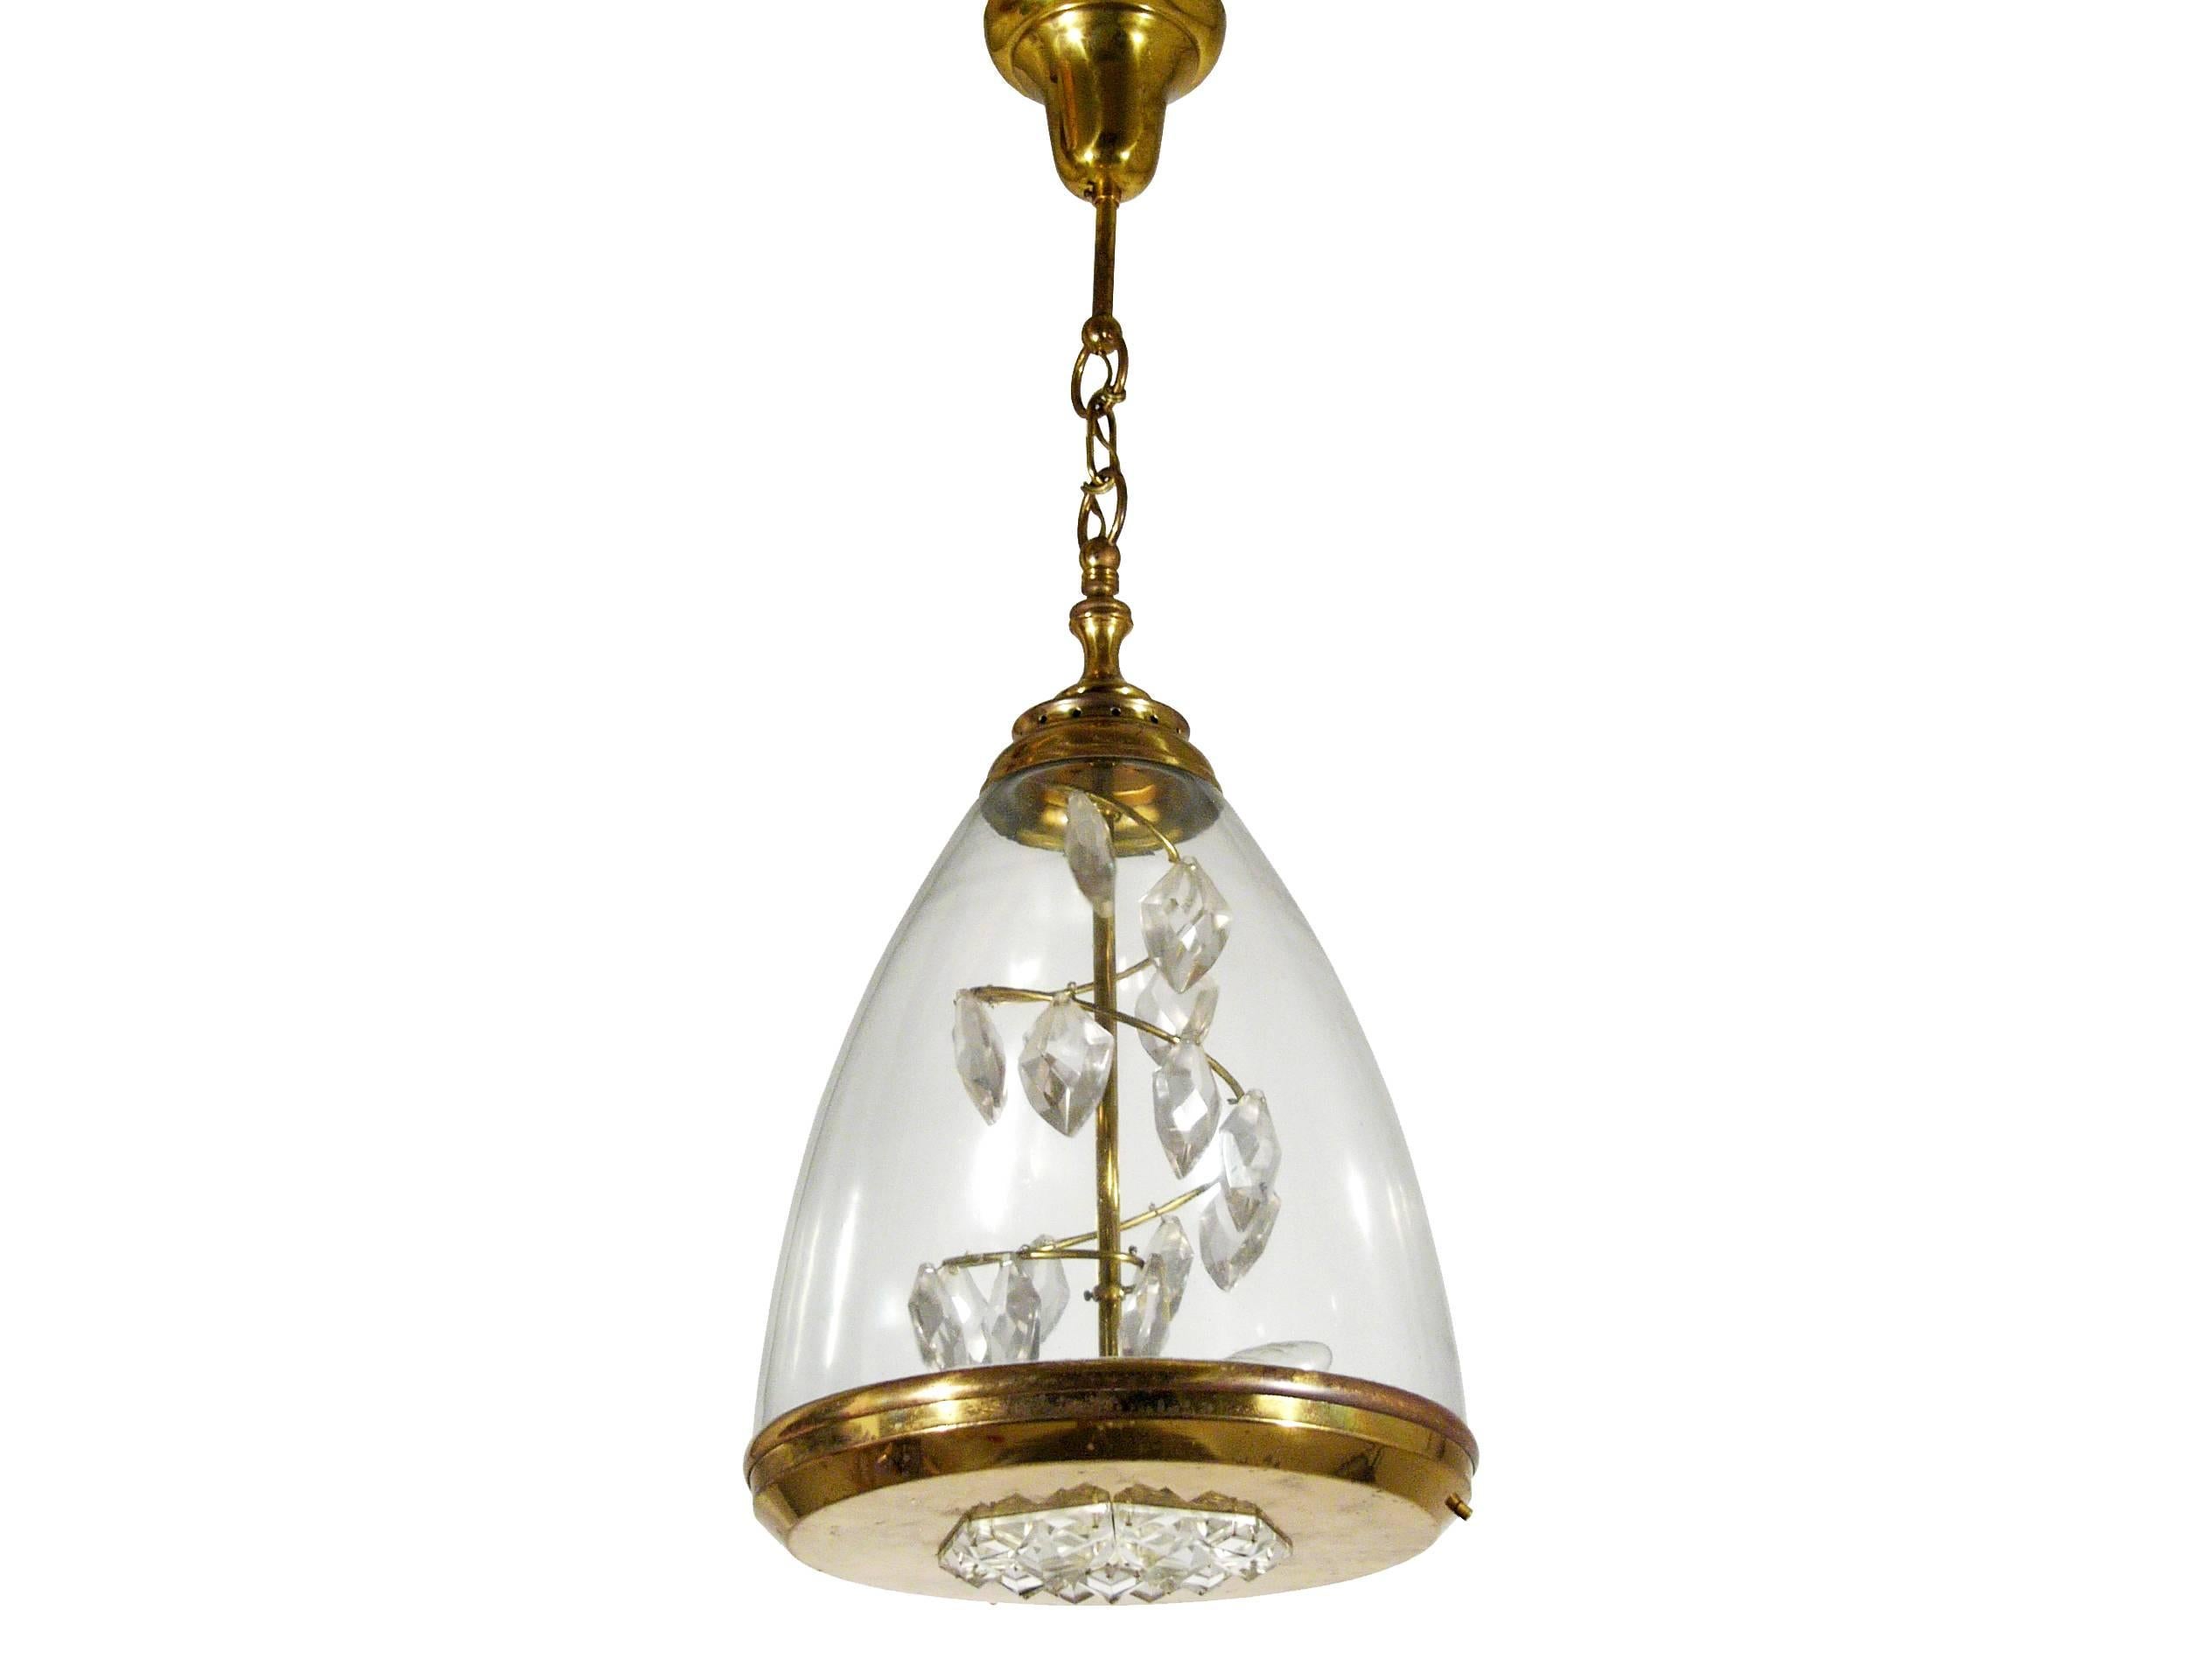 Ce luminaire suspendu a été conçu en Italie, vers les années 1950. Son style s'apparente à la production contemporaine d'Azucena. Il est composé de laiton, de verre soufflé à la bouche et d'une spirale décorative de prismes de cristal. Il est en